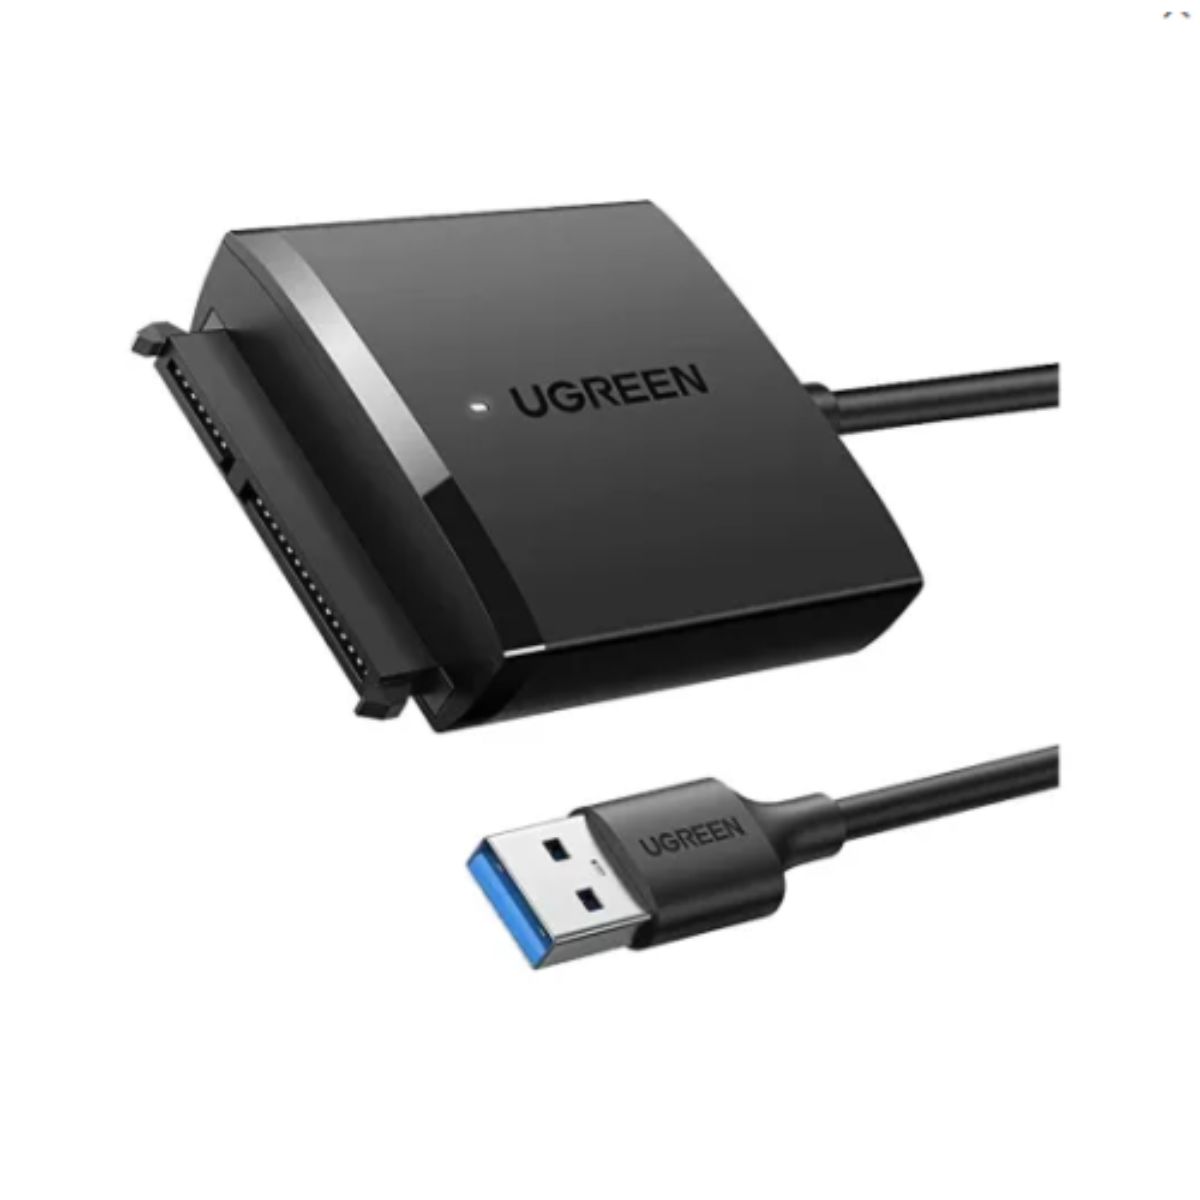 Cáp chuyển đổi USB 3.0 sang SATA Ugreen 60561EU CM257 hỗ trợ dung lượng 12TB